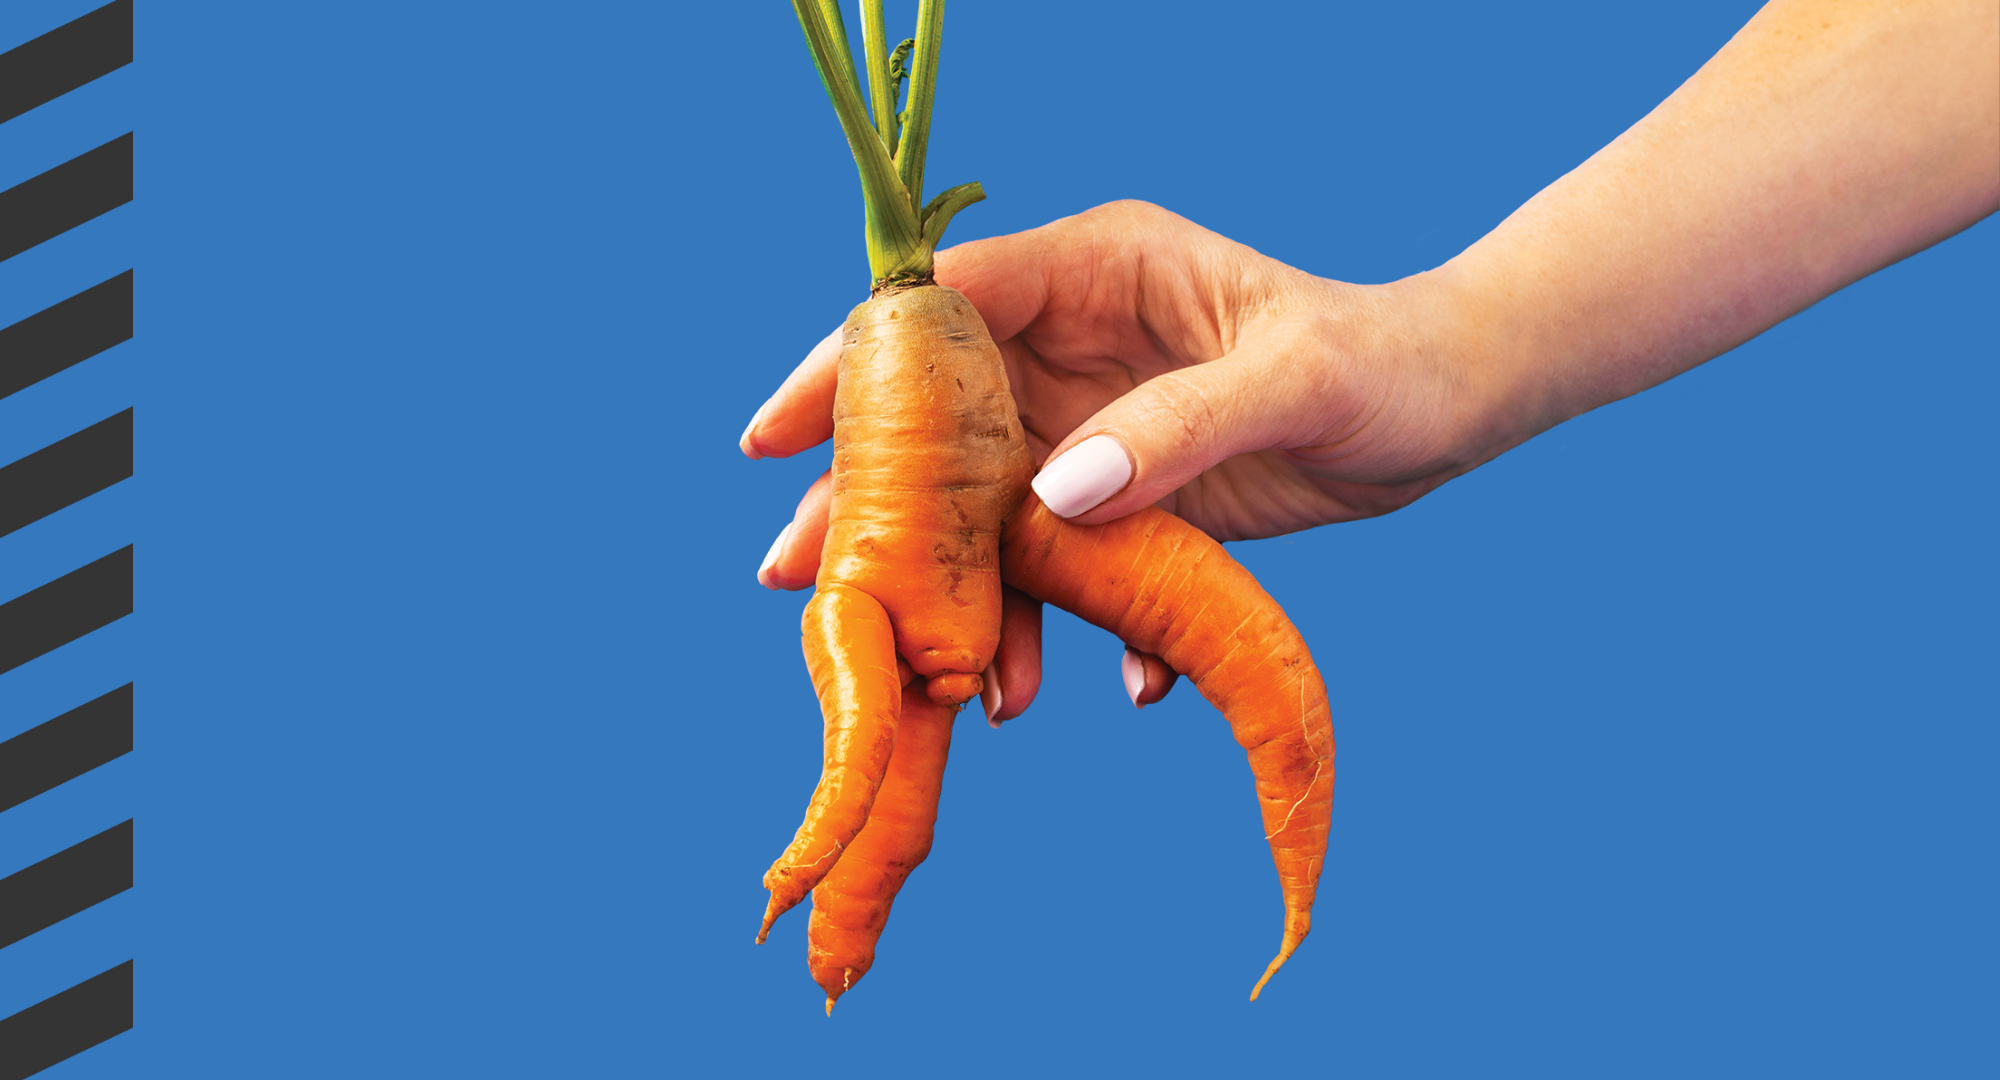 A hand holding a misshapen carrot